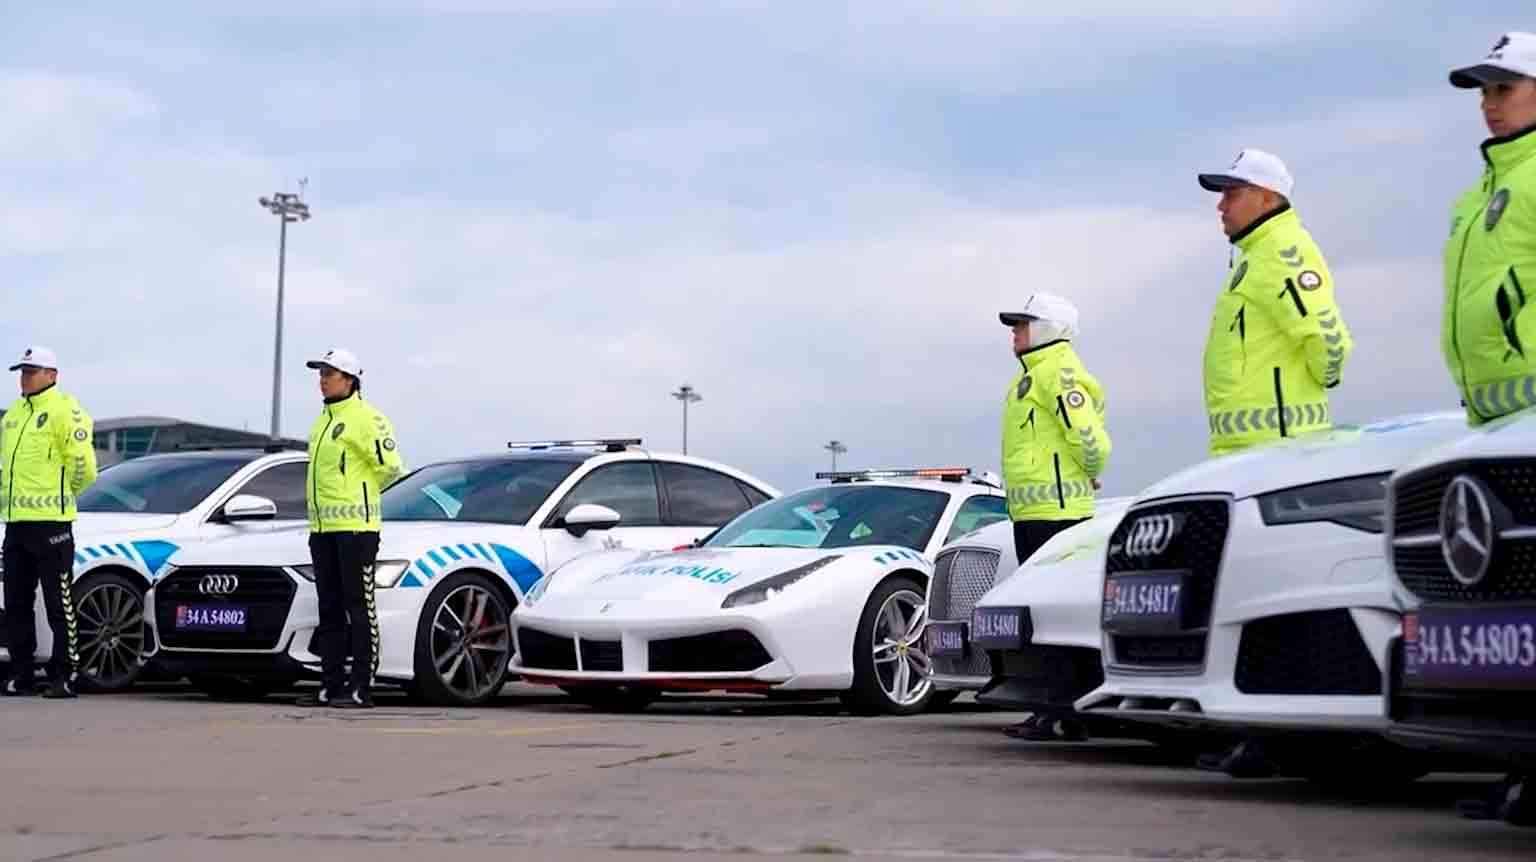 Istanbulin poliisi sisällyttää huumausainetoiminnassa takavarikoidut Ferrari, Bentley ja Porsche -autot partioautoflottaan. Kuvat ja videot: Reprodução Twitter @AliYerlikaya 